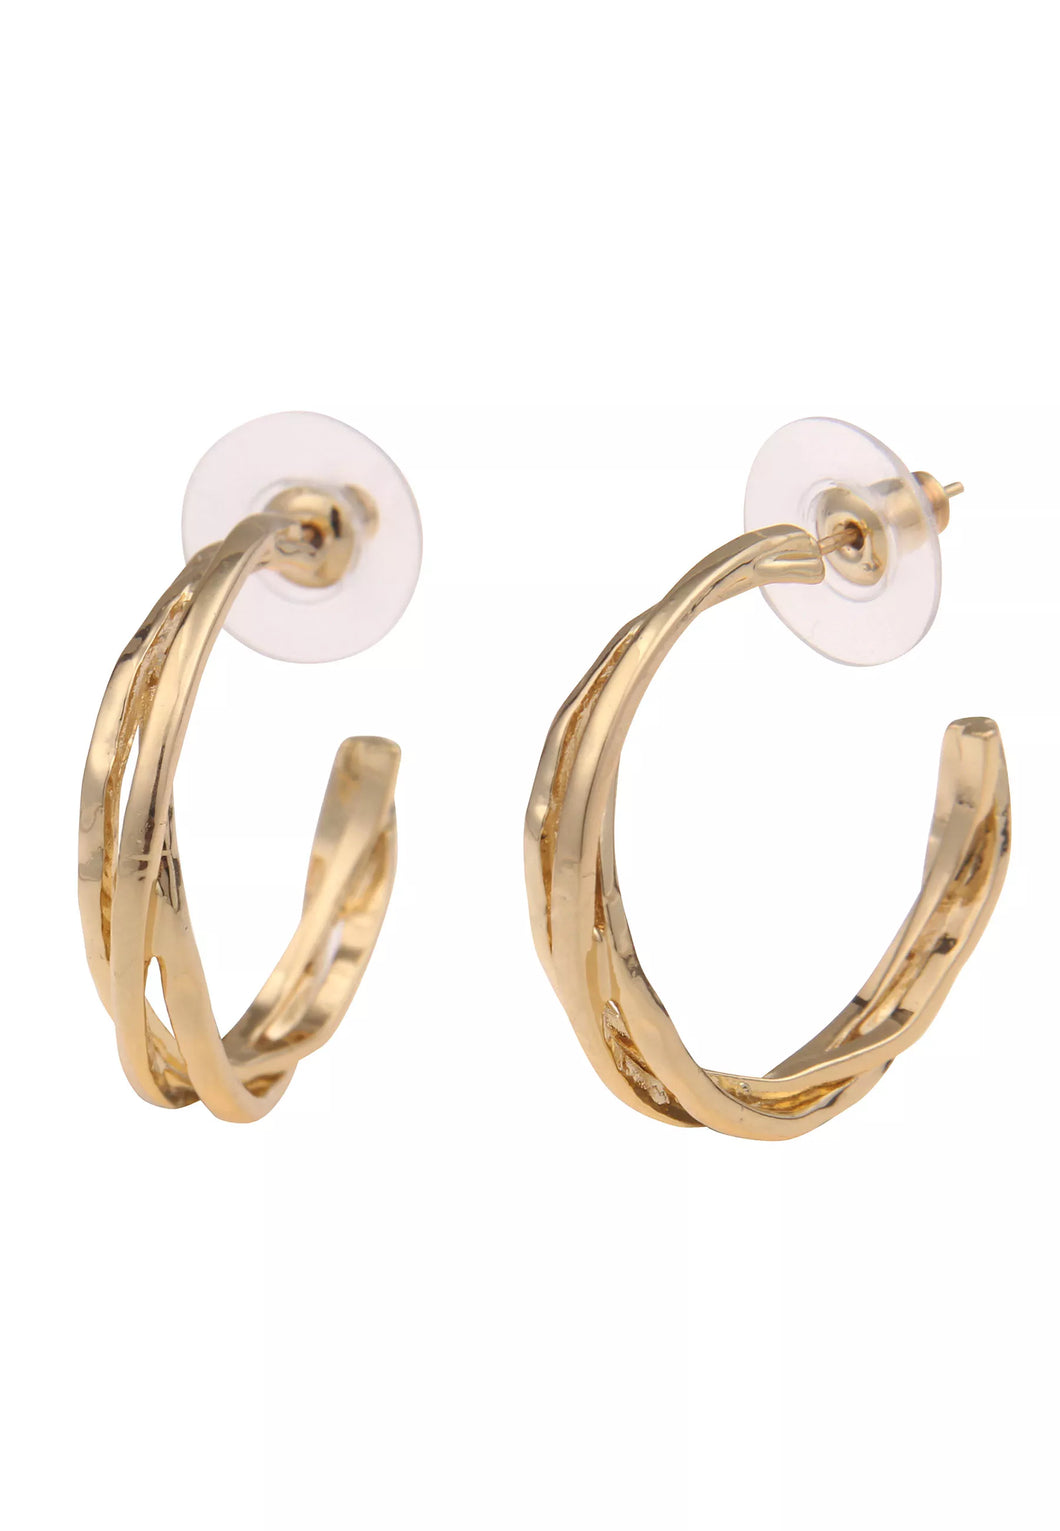 Leslii Damen-Ohrringe Creolen Spirale Glanz-Look goldene Modeschmuck-Ohrringe in Gold